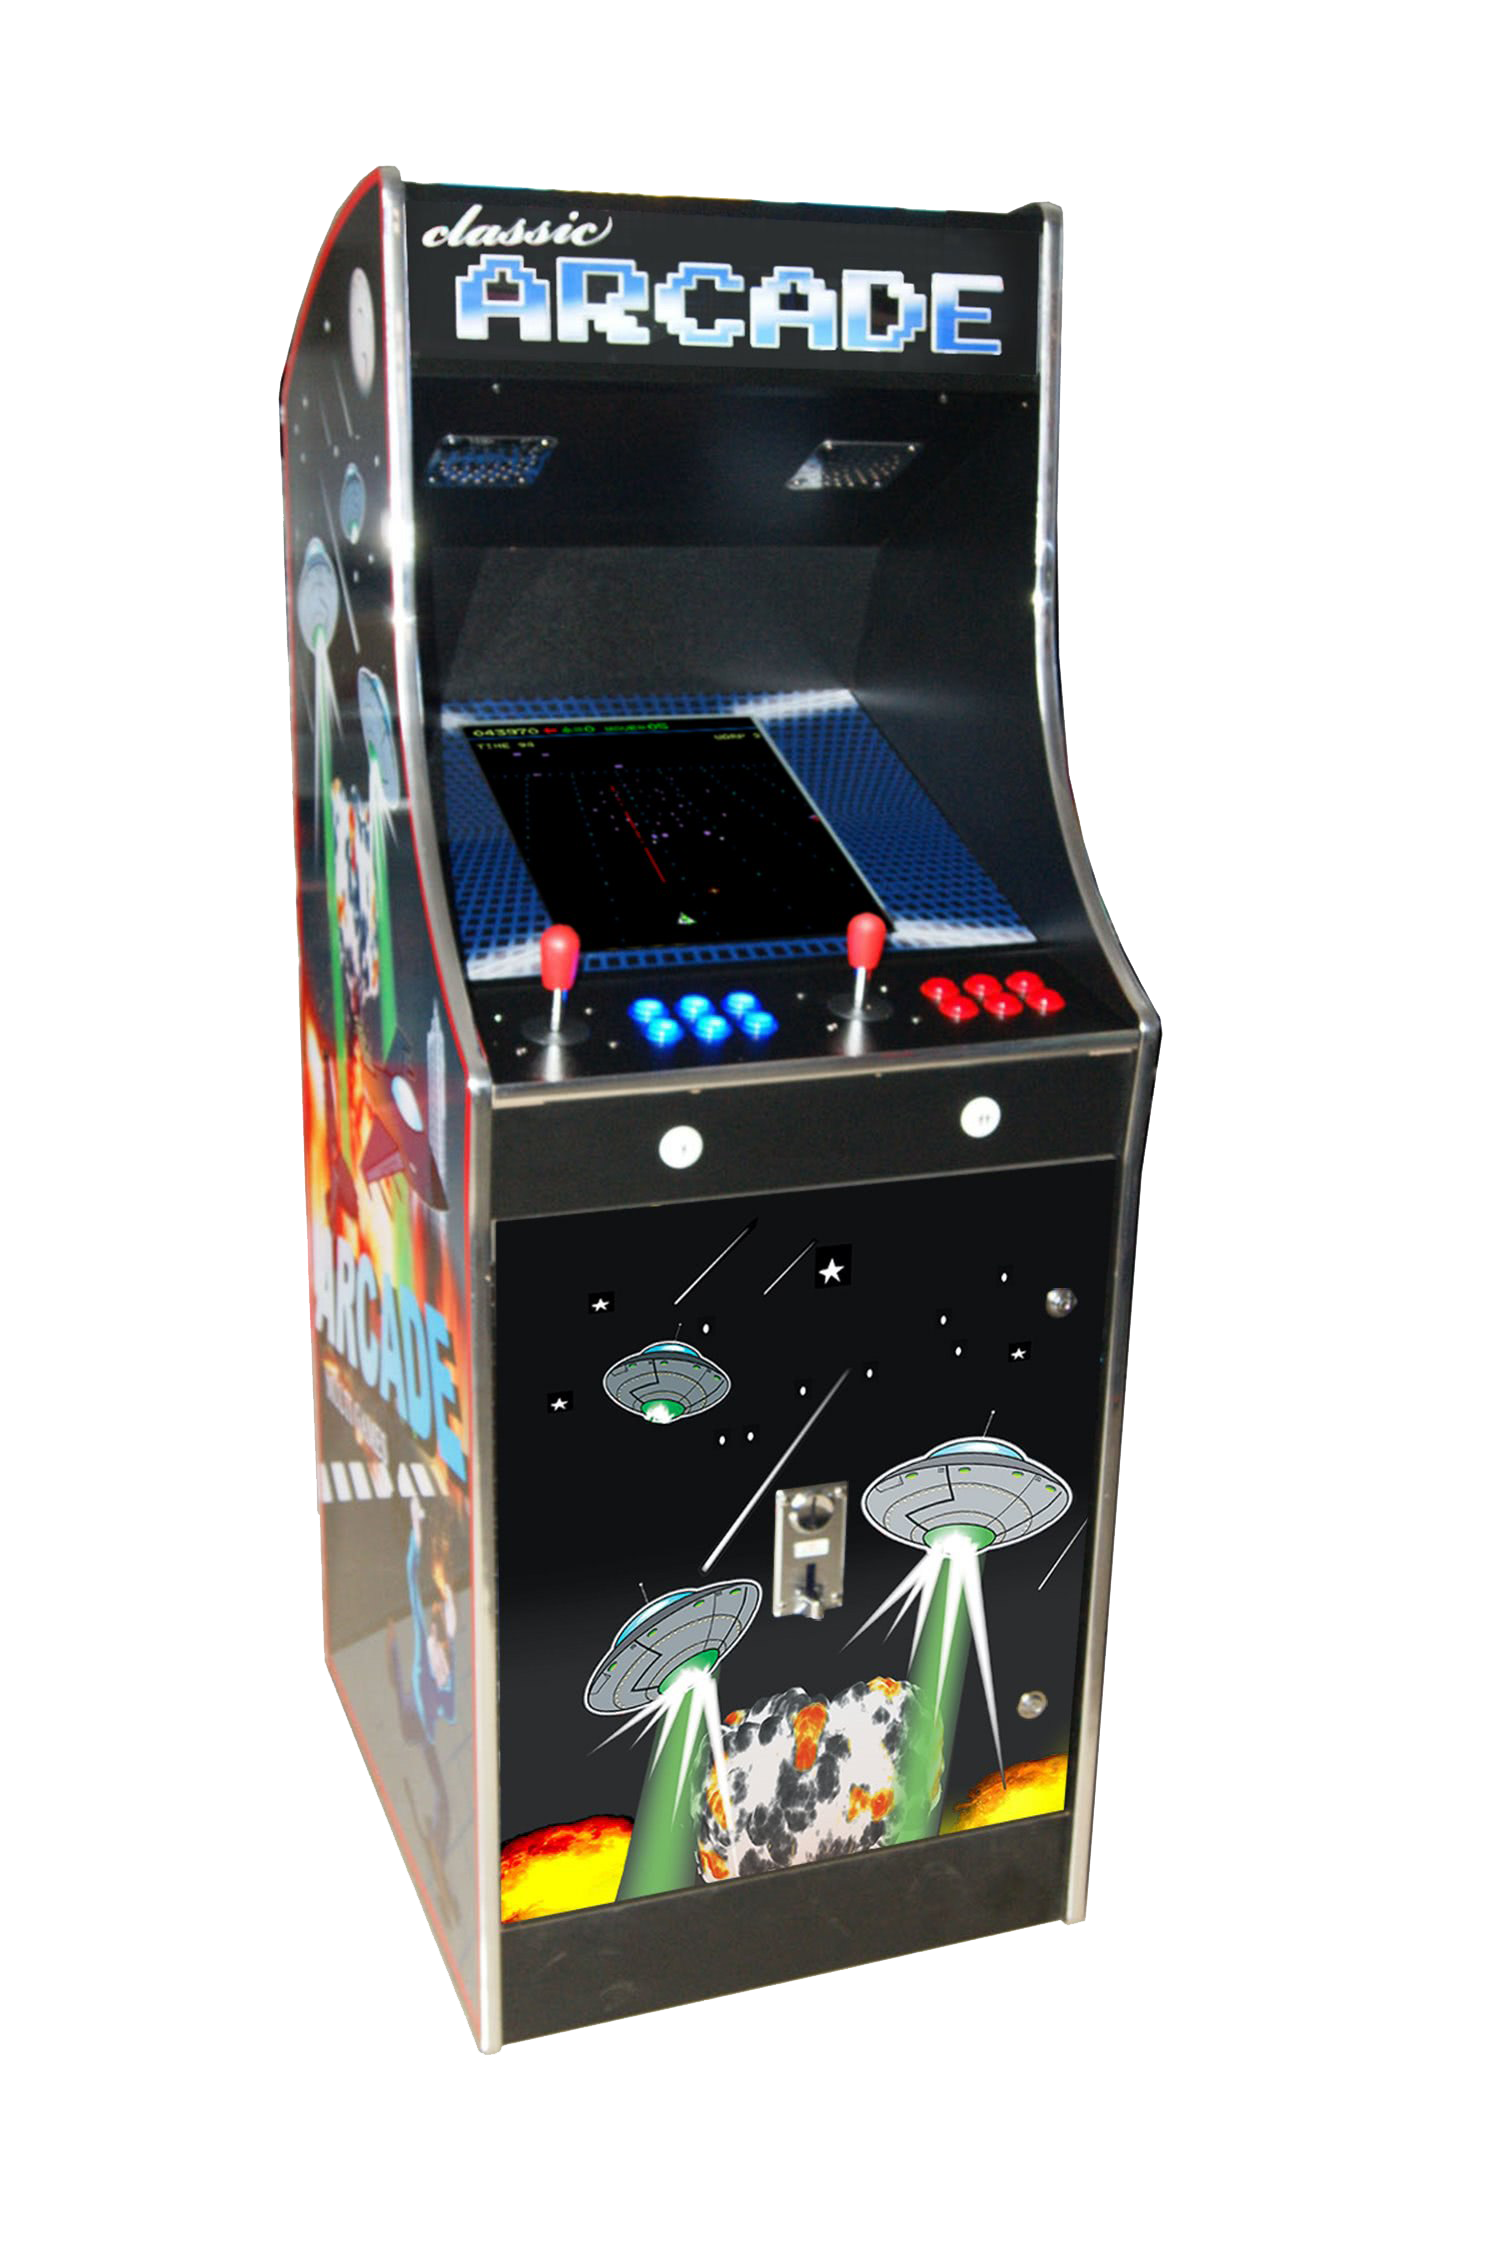 Immagine png della macchina arcade